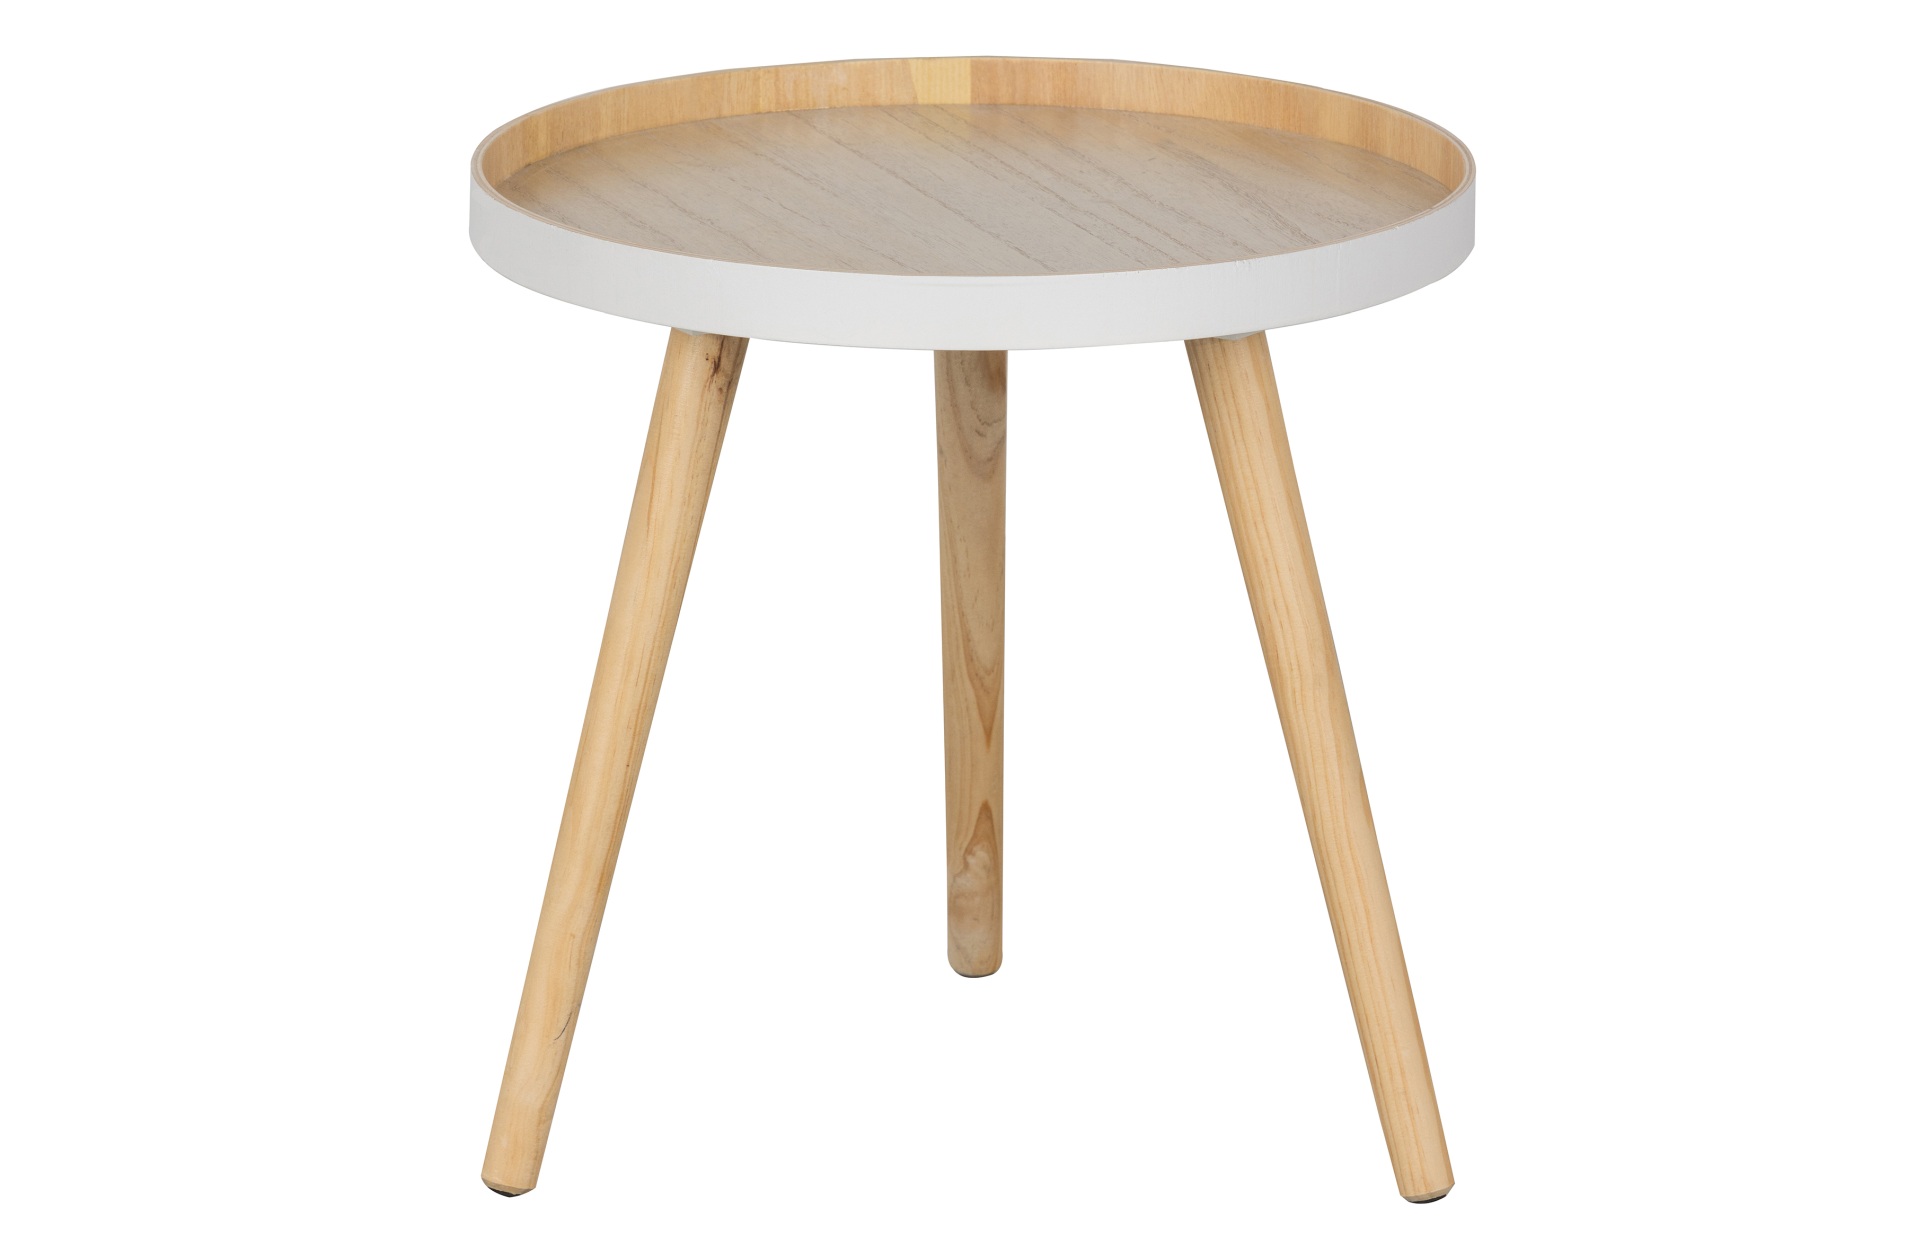 Der Couchtisch Sasha besitzt eine runde Form. Der Tisch ist in einem weißen Farbton, nur die Tischplatte ist natürlich gehalten und schafft einen schönen Kontrast.